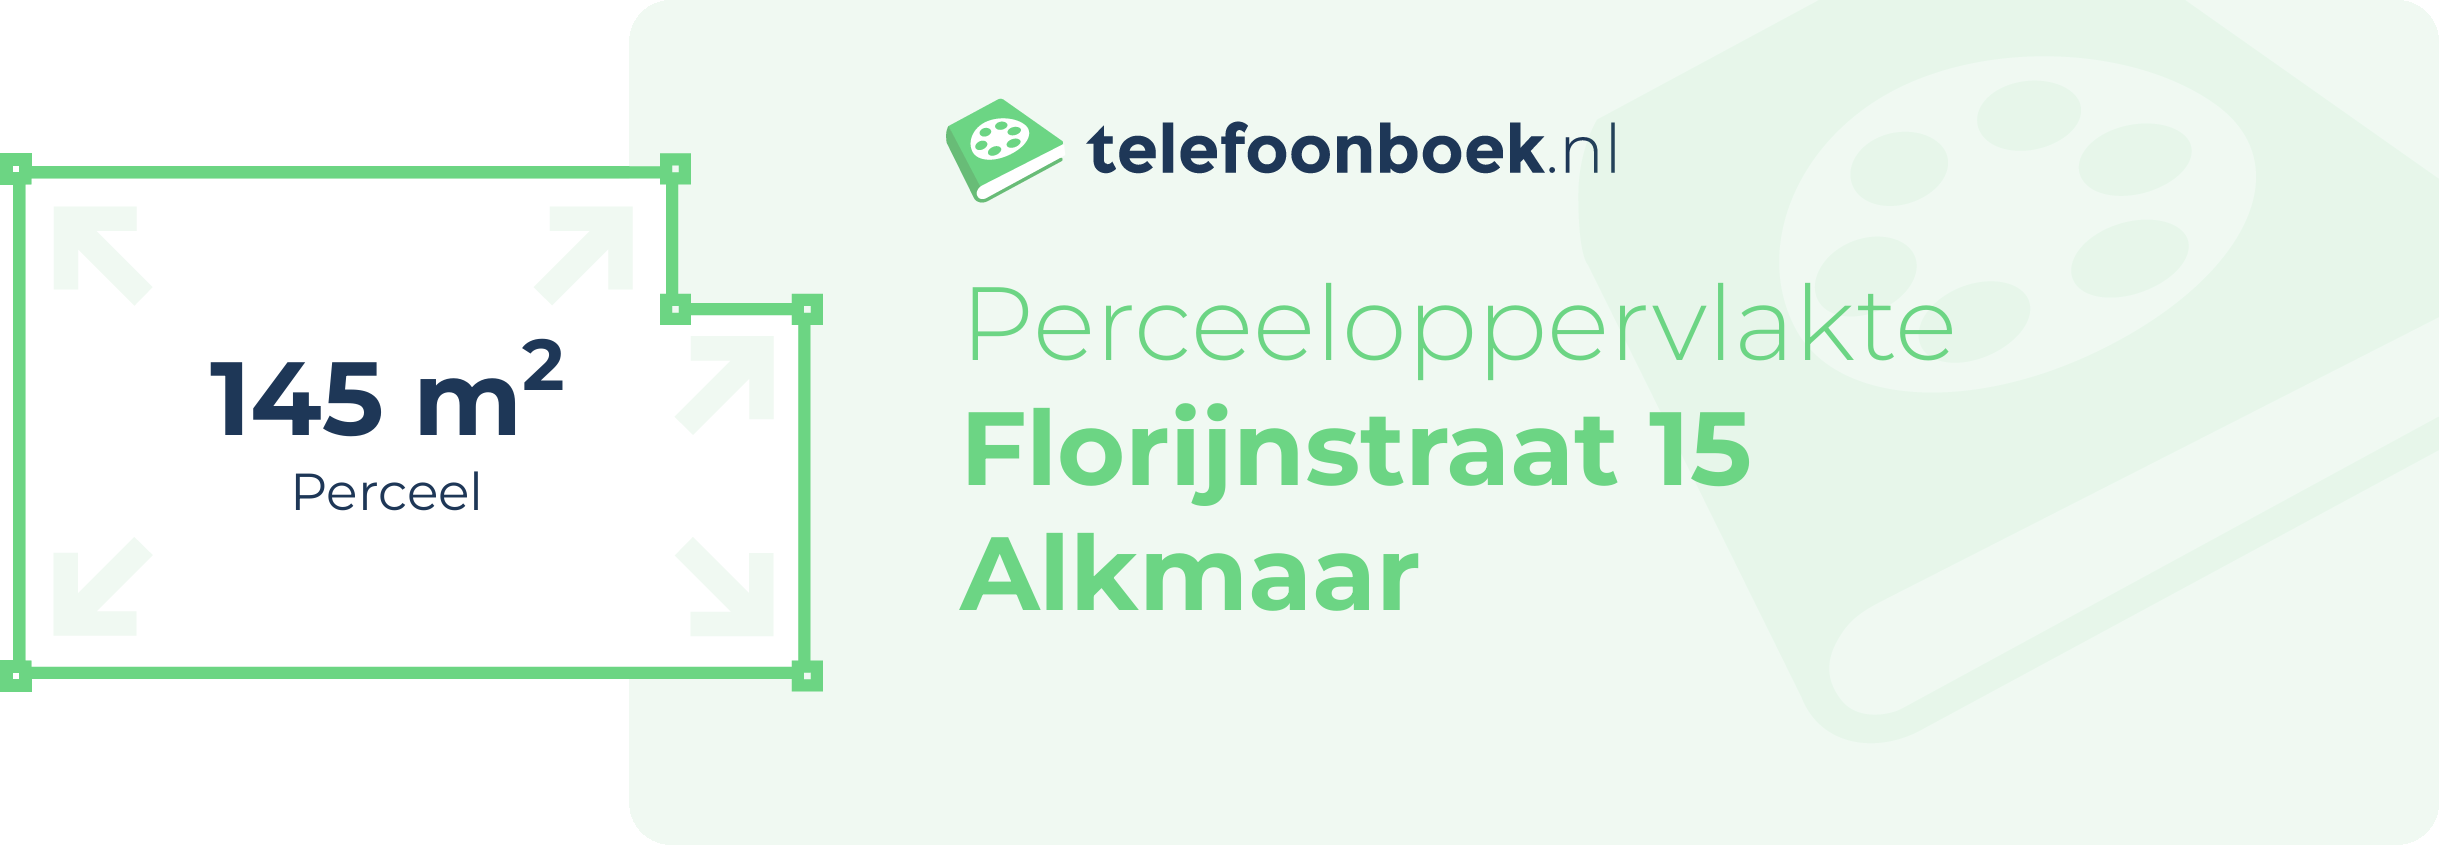 Perceeloppervlakte Florijnstraat 15 Alkmaar